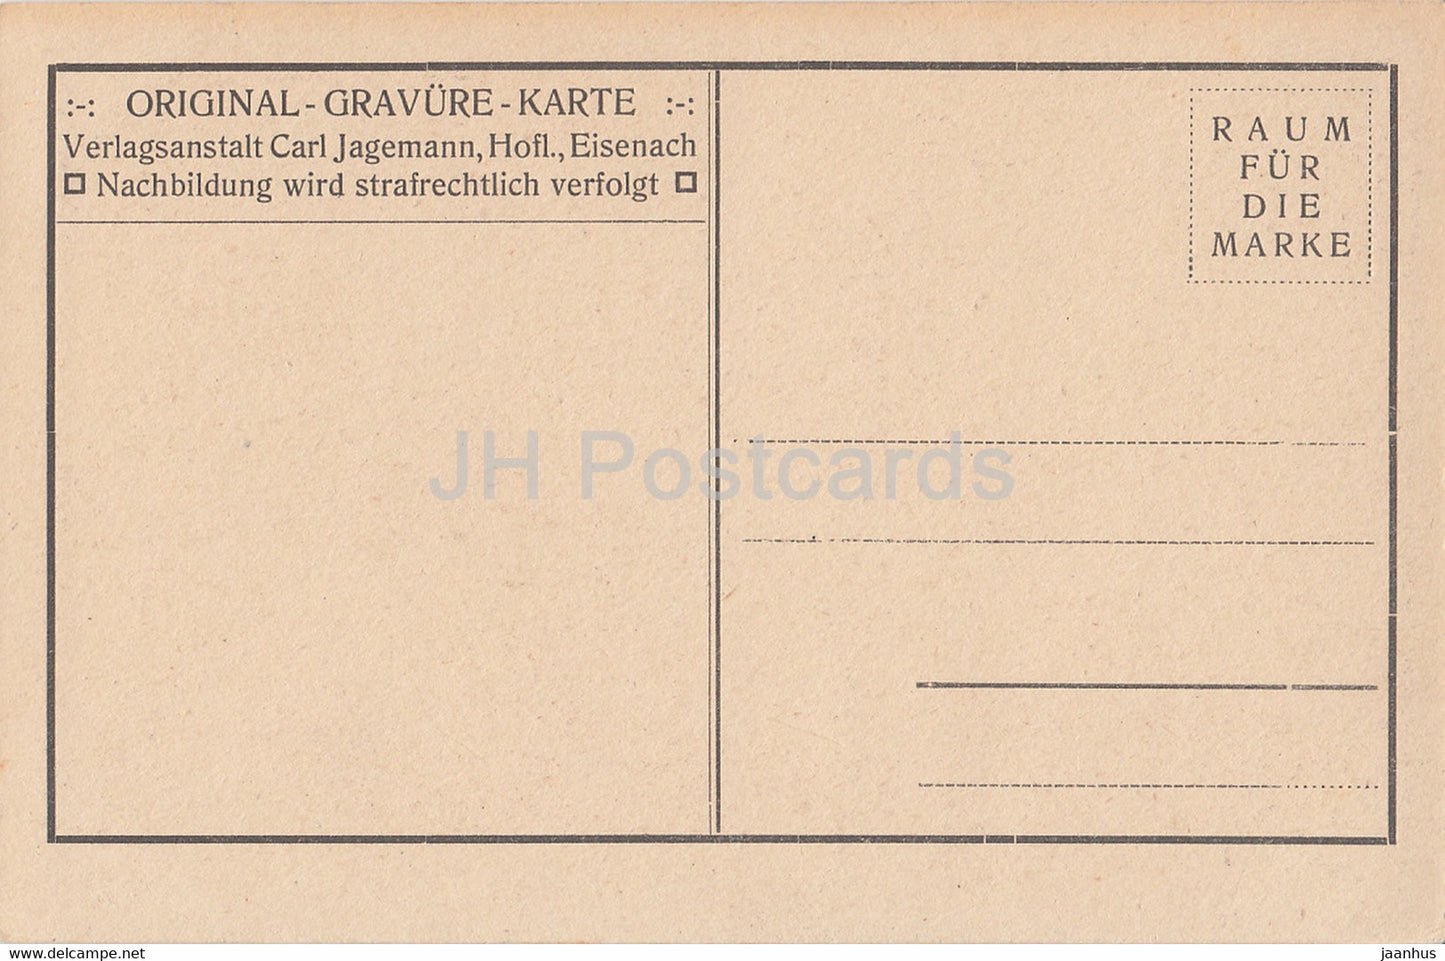 Die Altensteiner Hohle - Höhle - alte Postkarte - Deutschland - unbenutzt